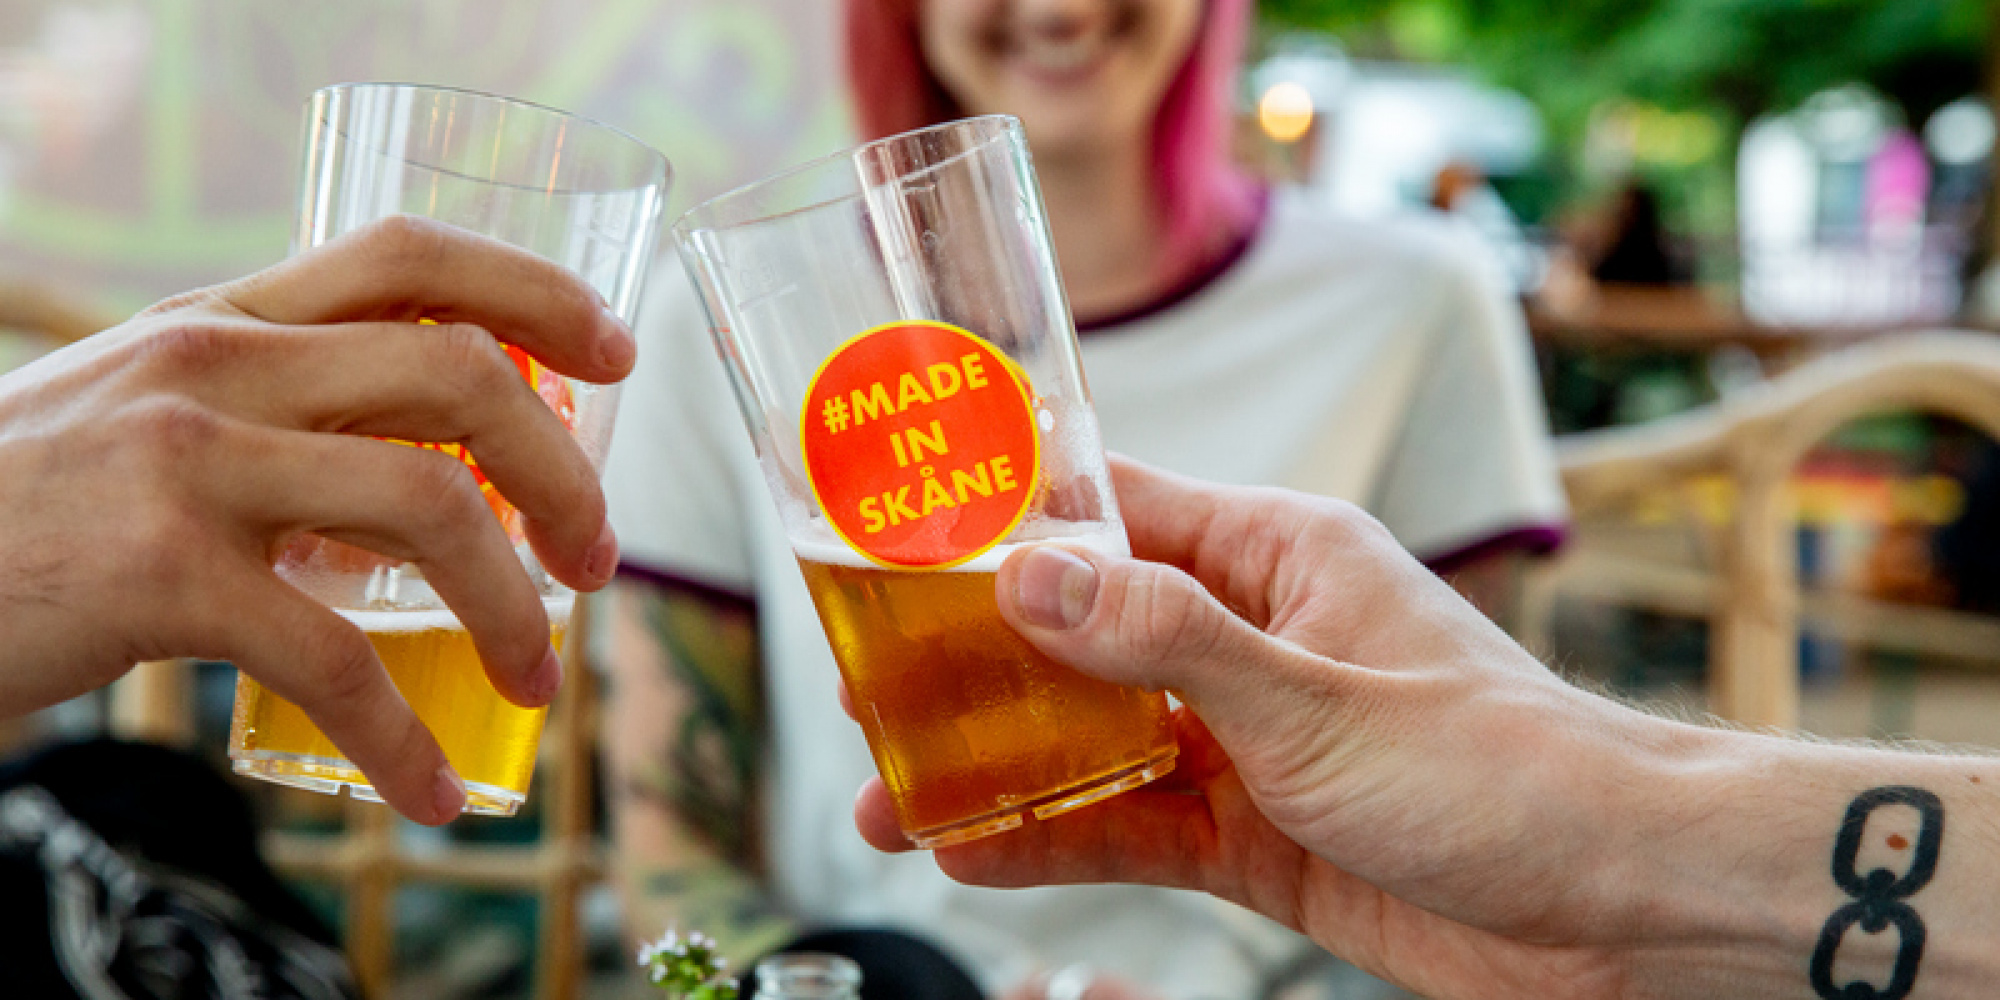 Ölglas med texten "Made in Skåne"